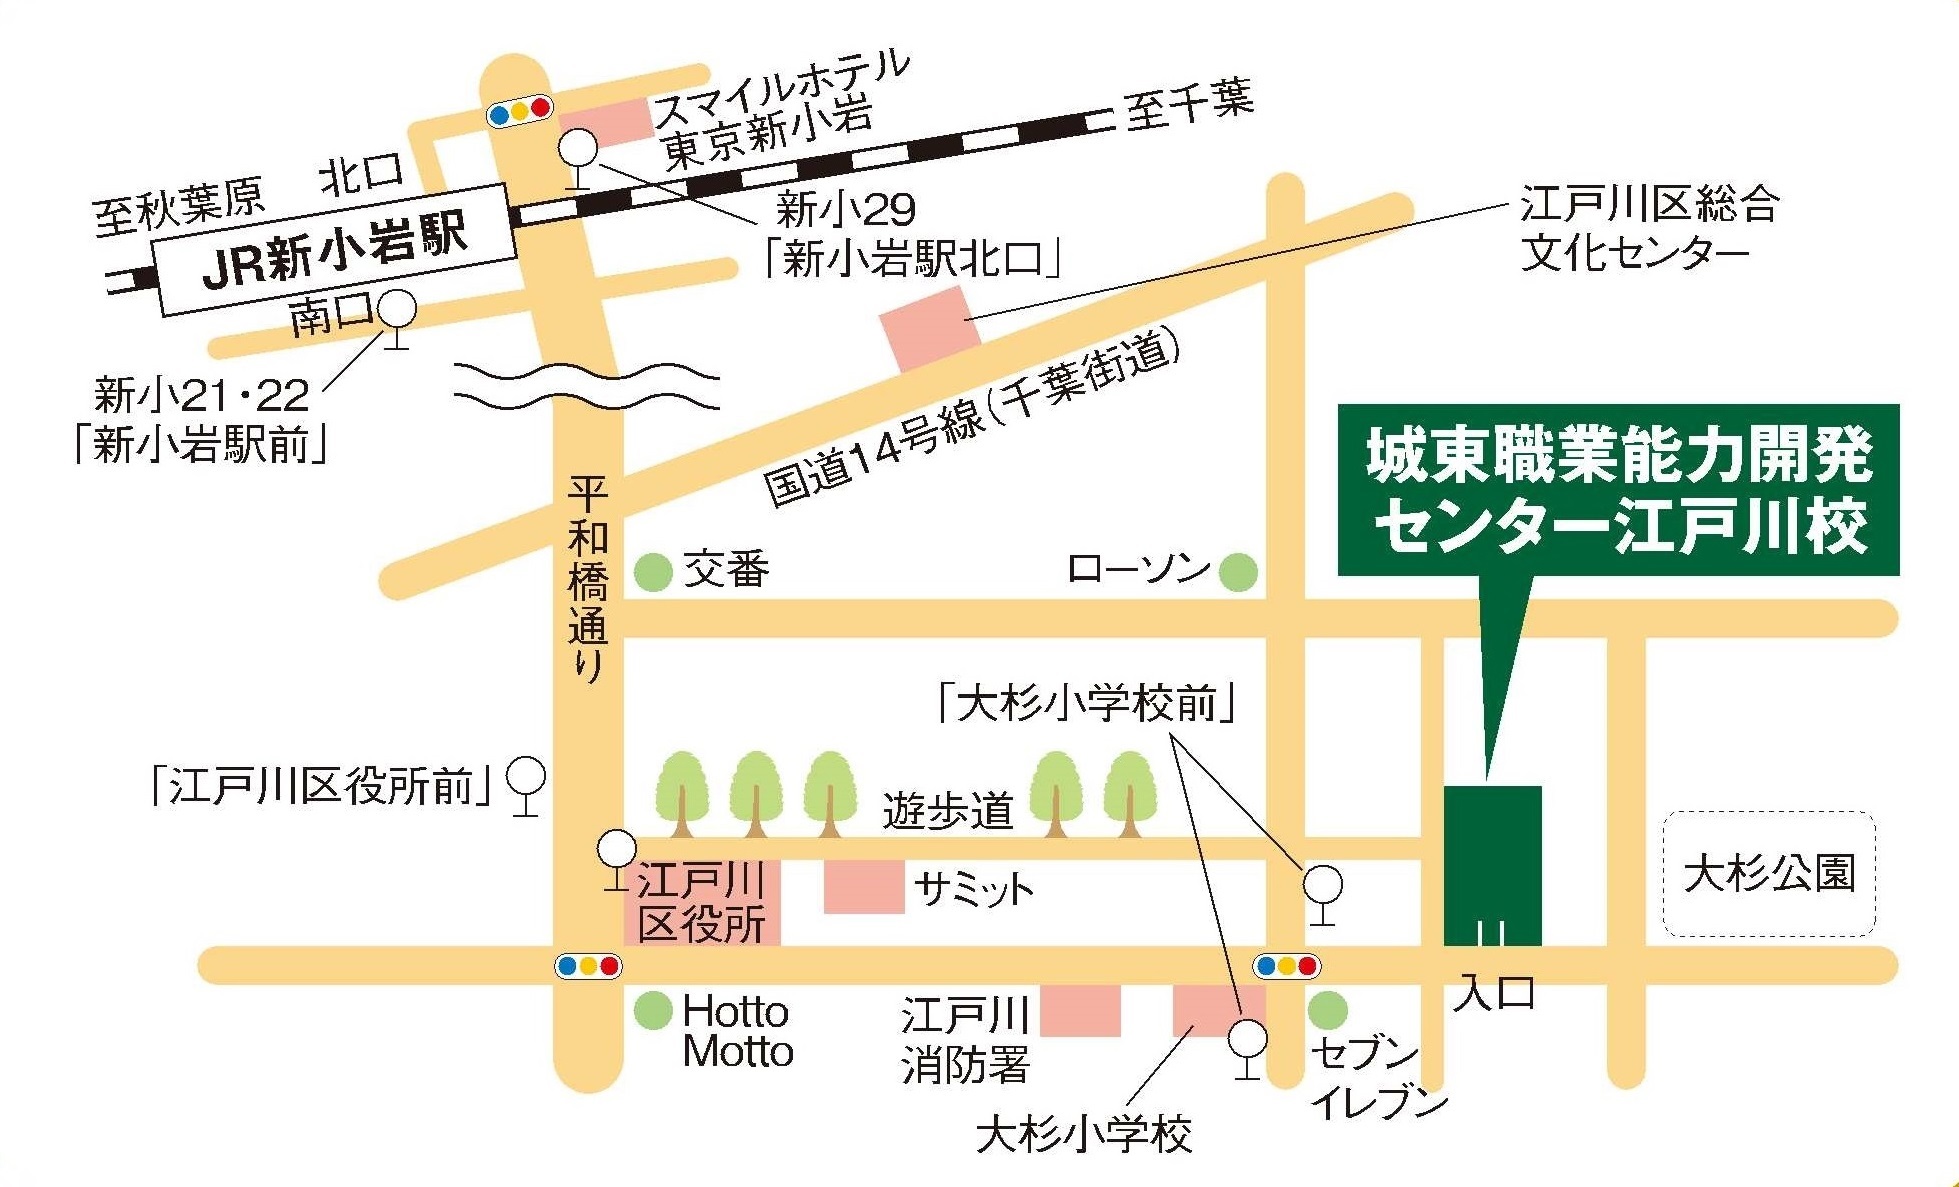 江戸川校地図